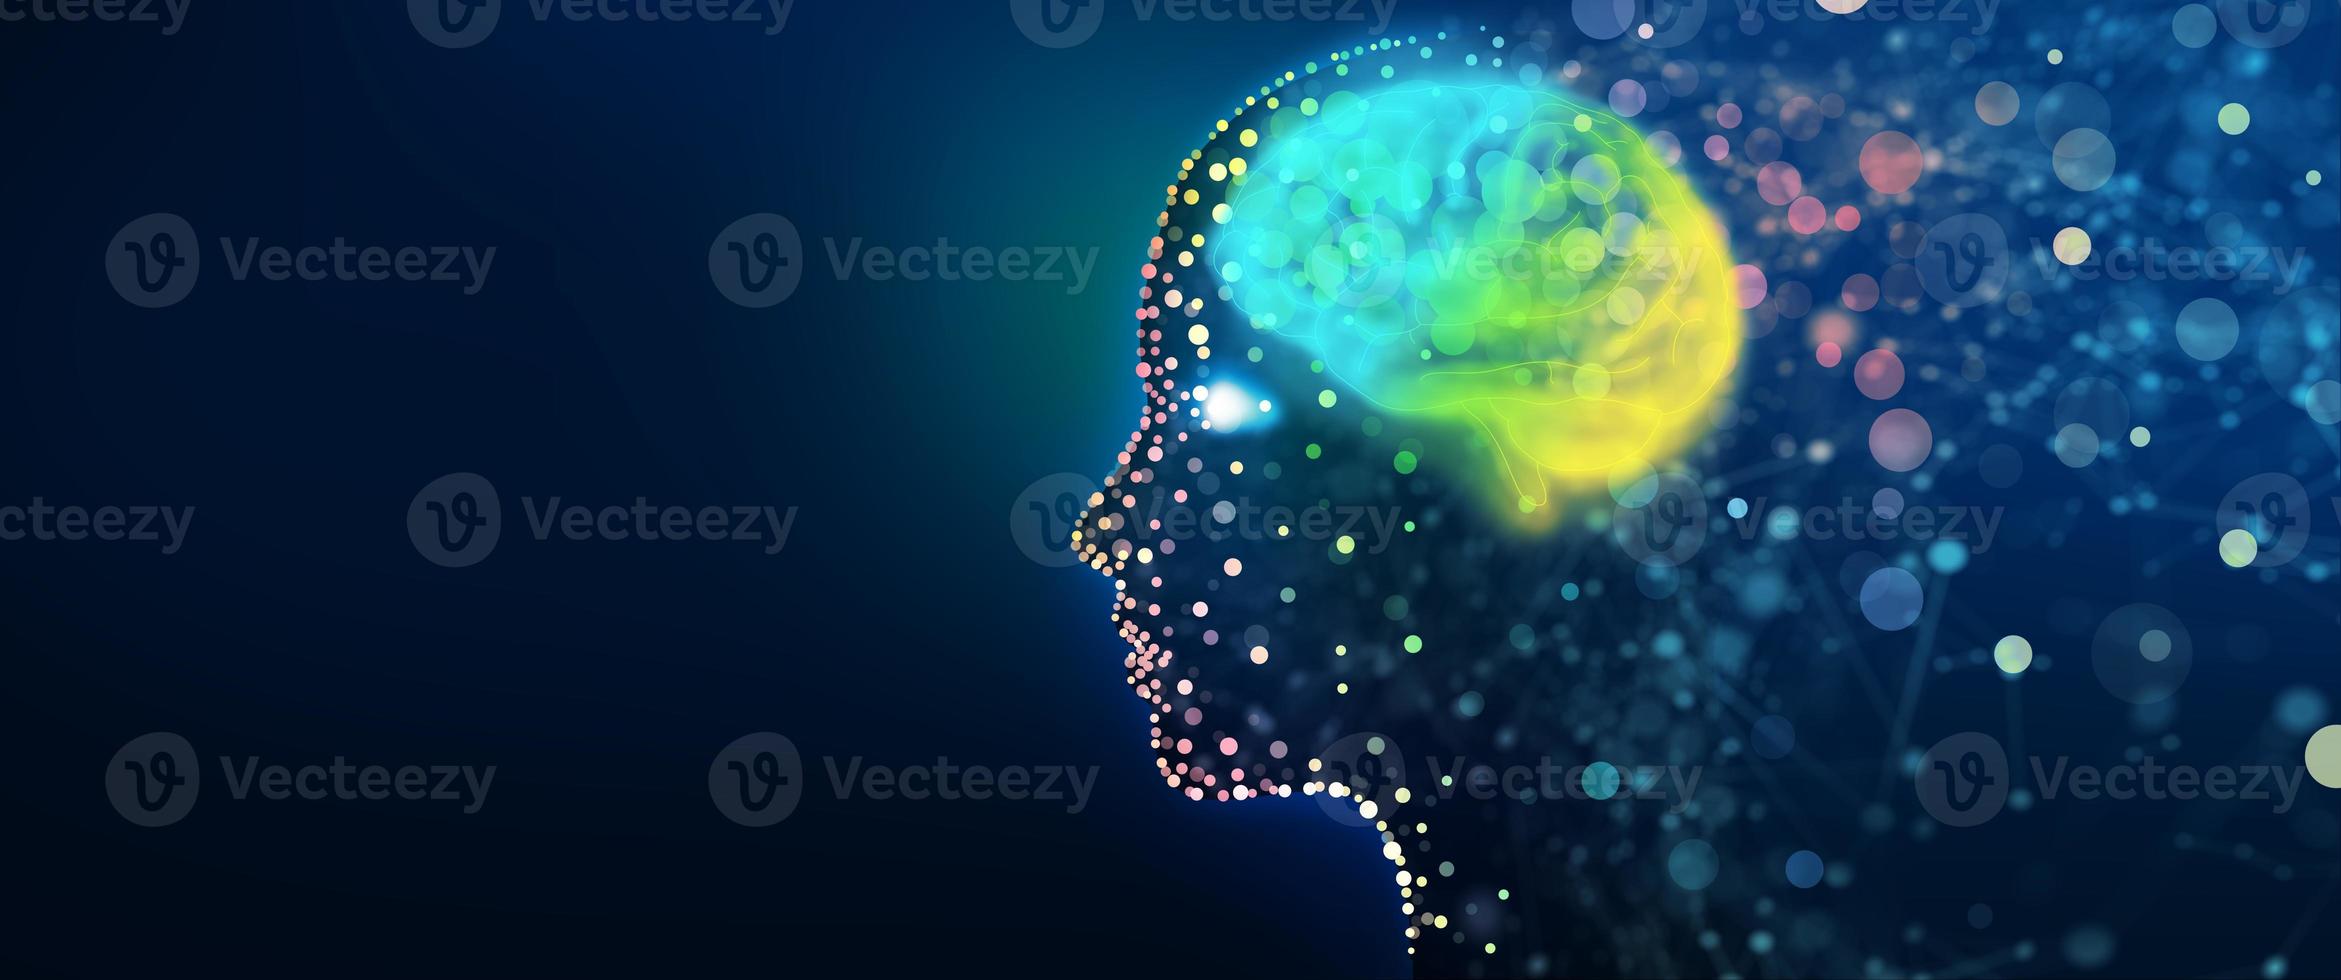 mänskligt huvud med ett lysande hjärnnätverk foto